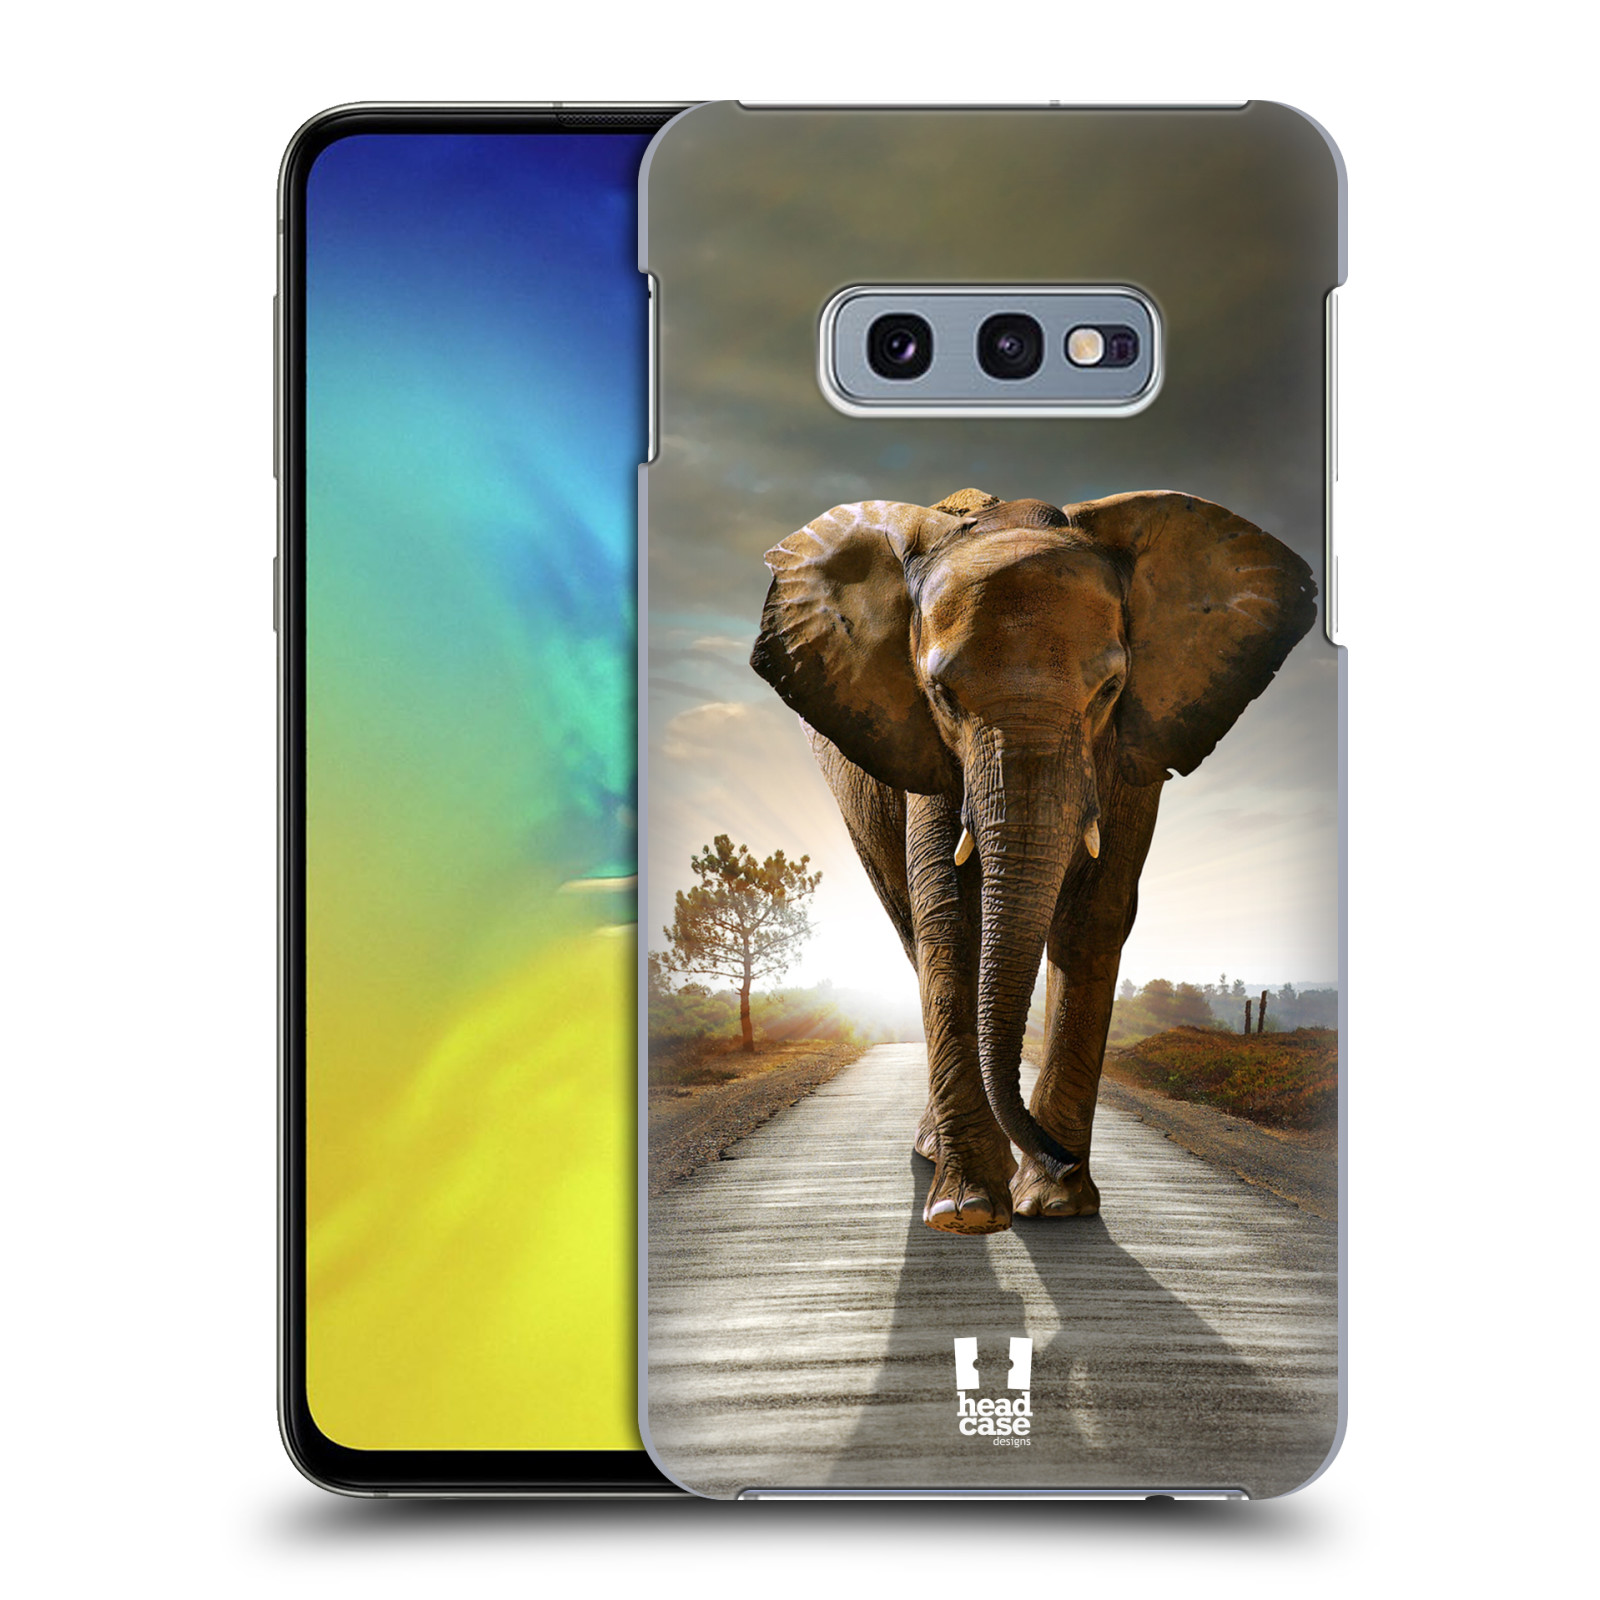 Zadní obal pro mobil Samsung Galaxy S10e - HEAD CASE - Svět zvířat kráčející slon